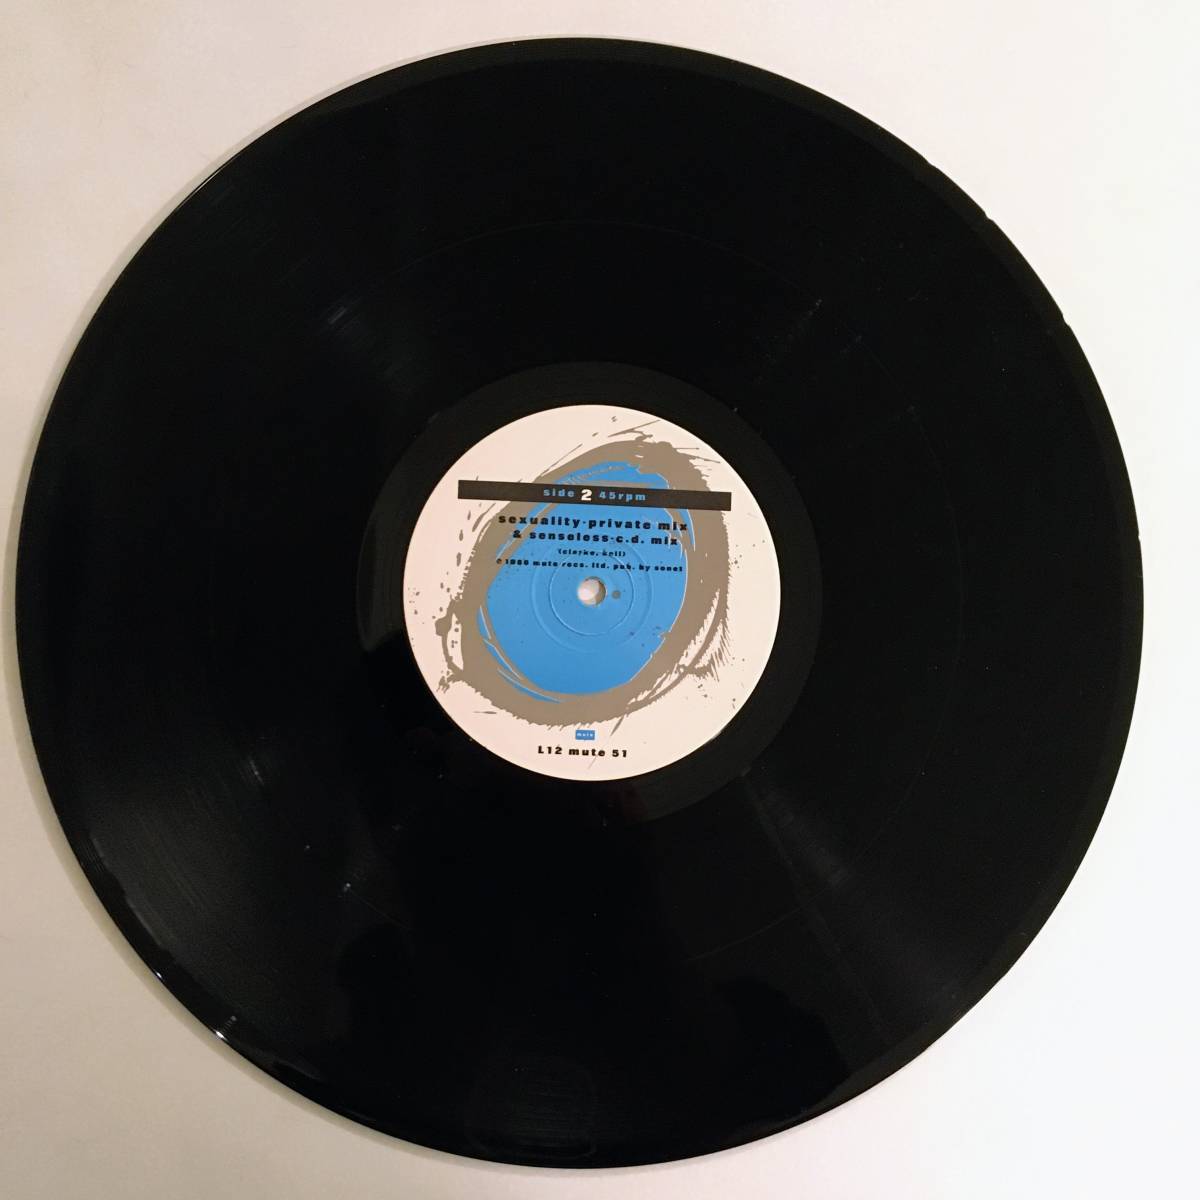 イレージャー/ erasure 12"シングルレコード「Sometimes (Shiver Mix)」（UK盤）| MUTE Records L12 mute 51（限定盤）_画像4